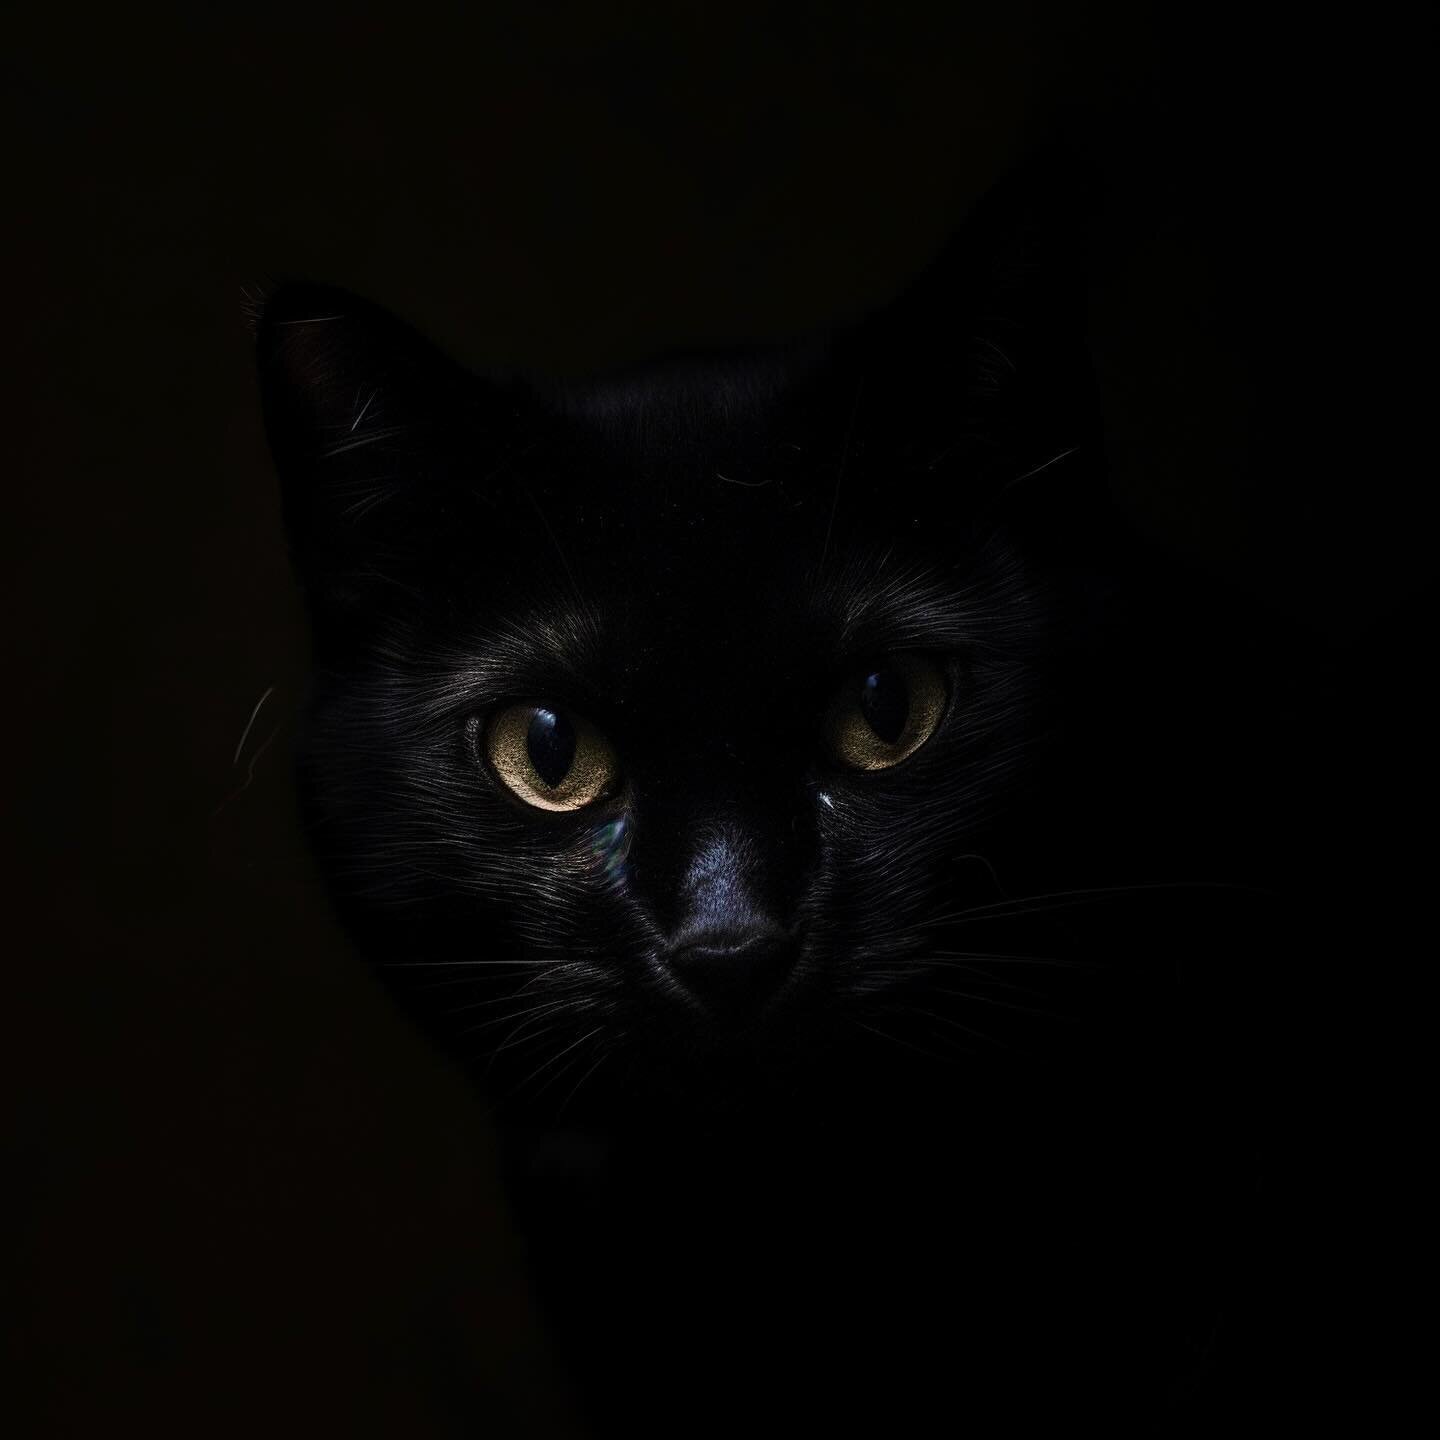 Black cat at midnight 

Made with MidJourney v6

#aiart #aigeneratedart #generativeart #digitalart #art #aiartcommunity #midjourney #midjourneyai #midjourneyv6 #black #cat #blackcat #dark